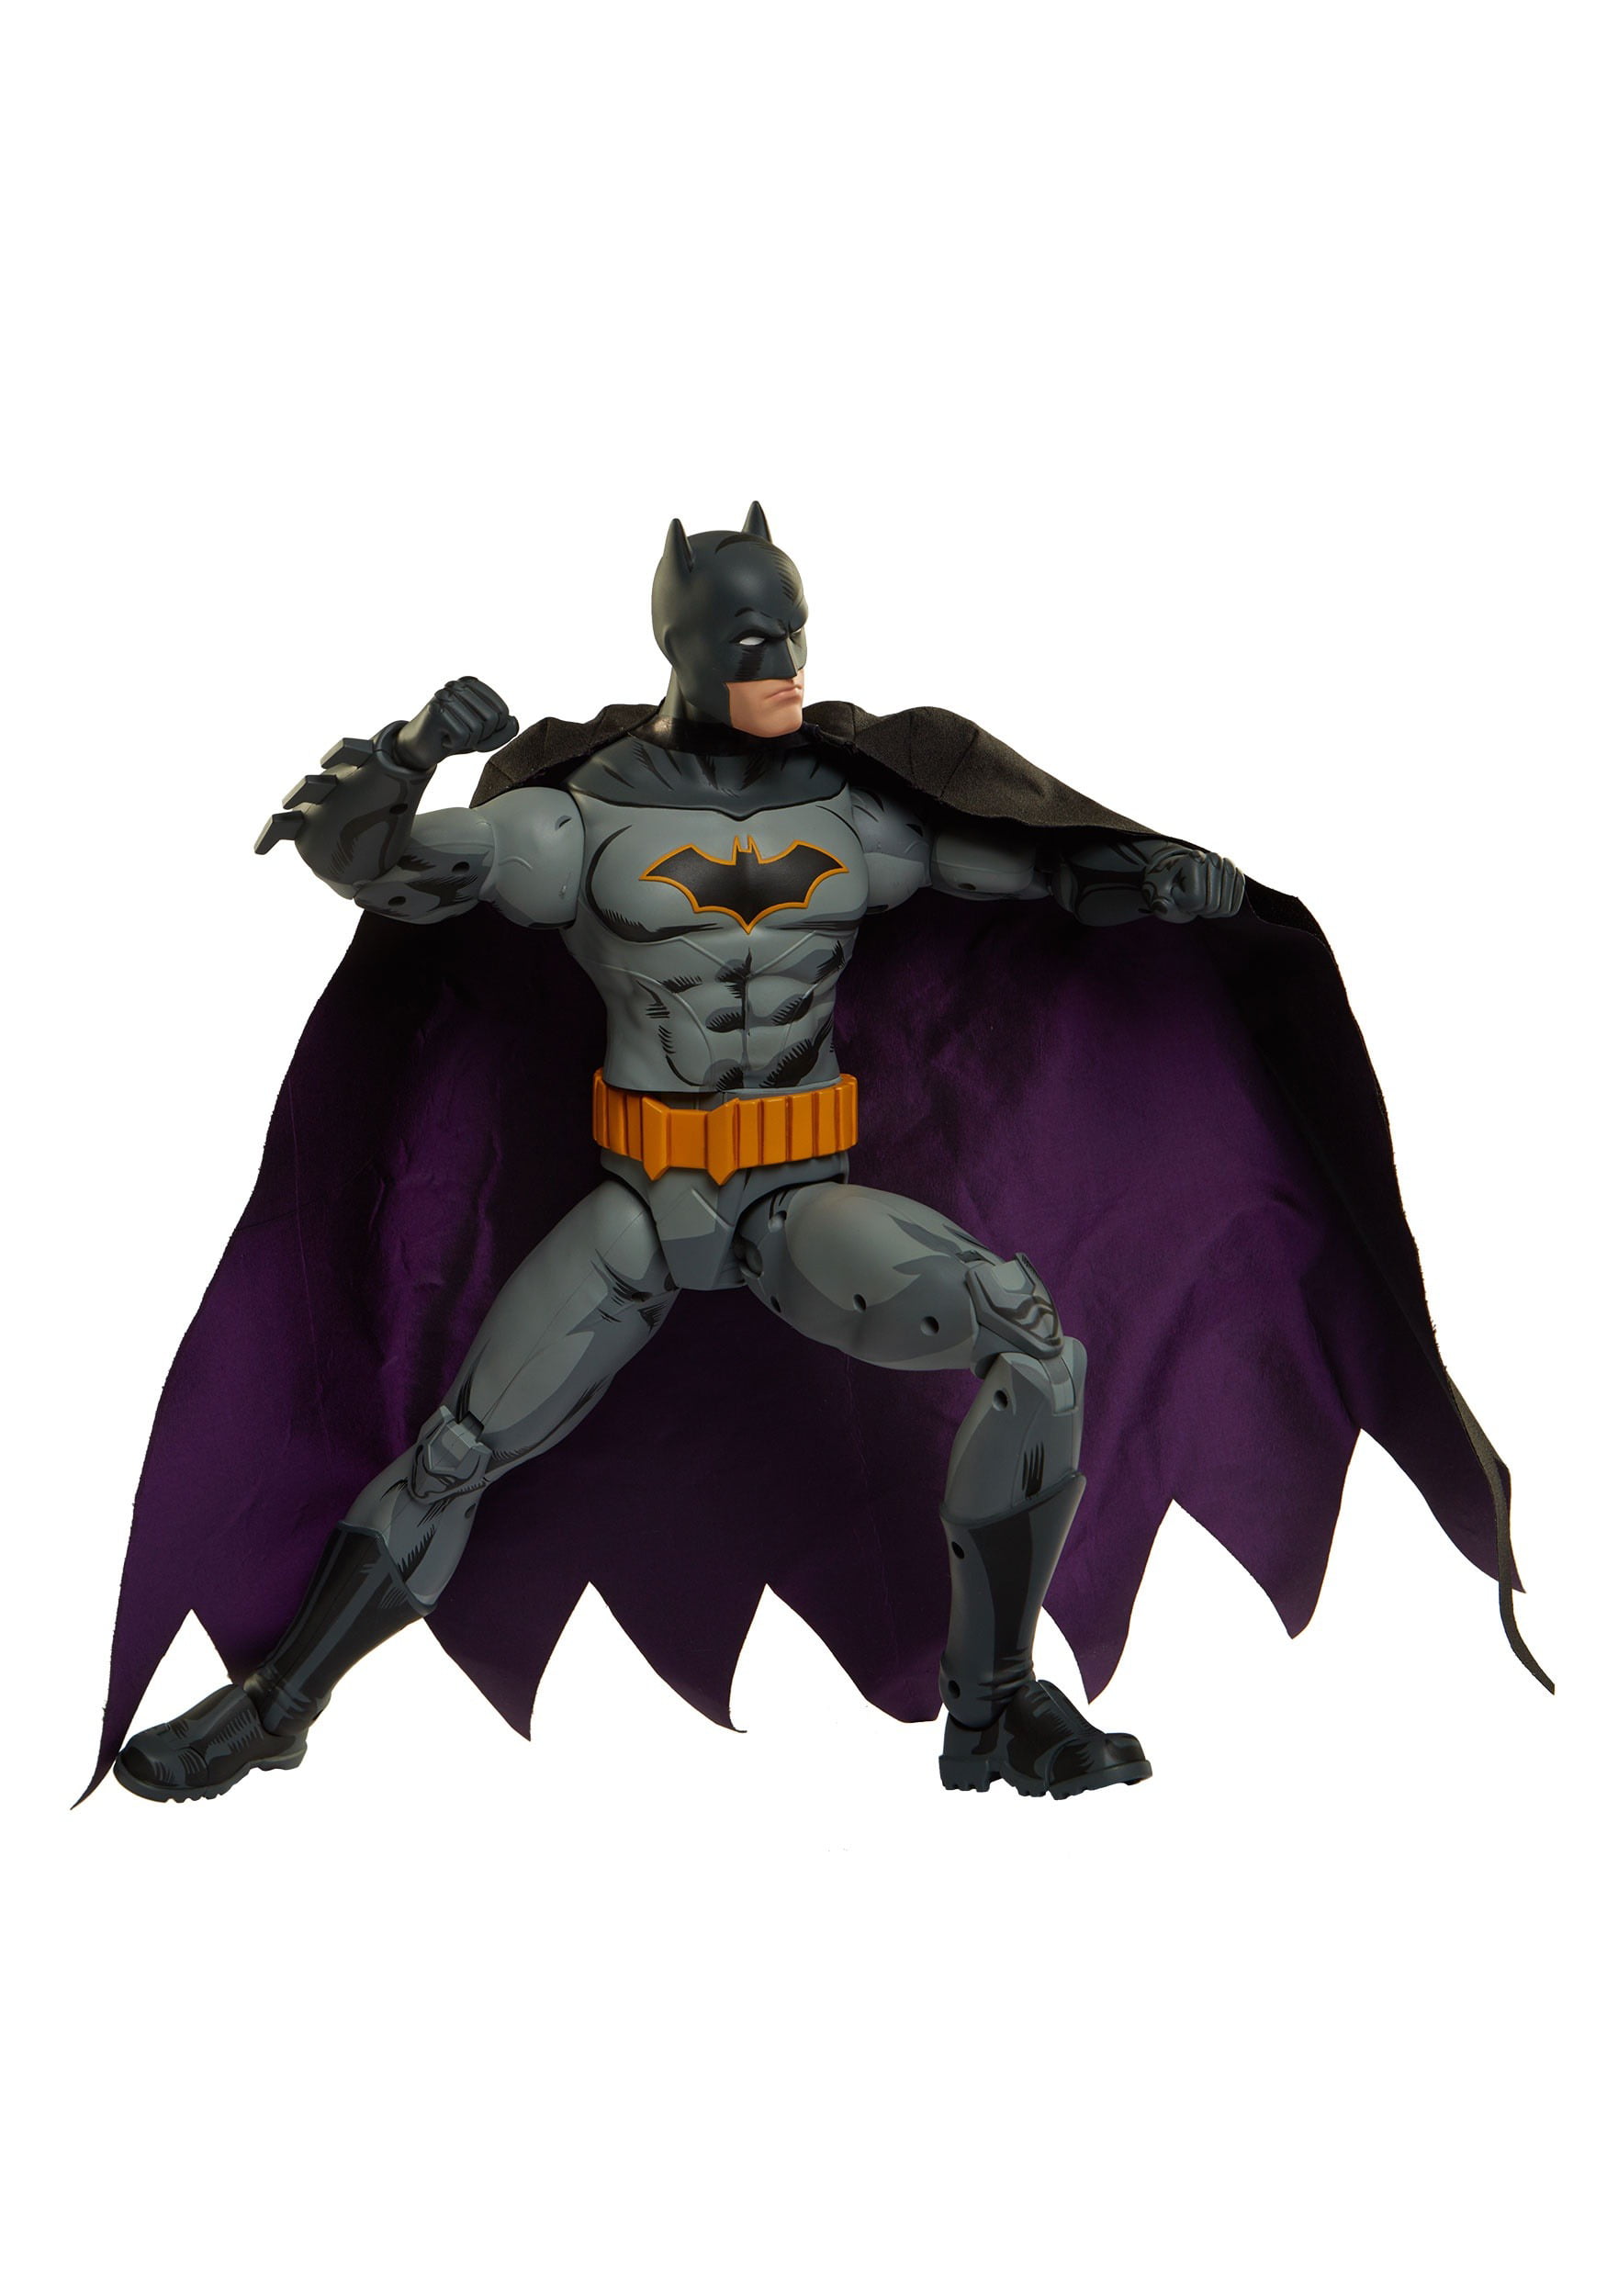 Batman Action Figure Big Fig - Walmart 